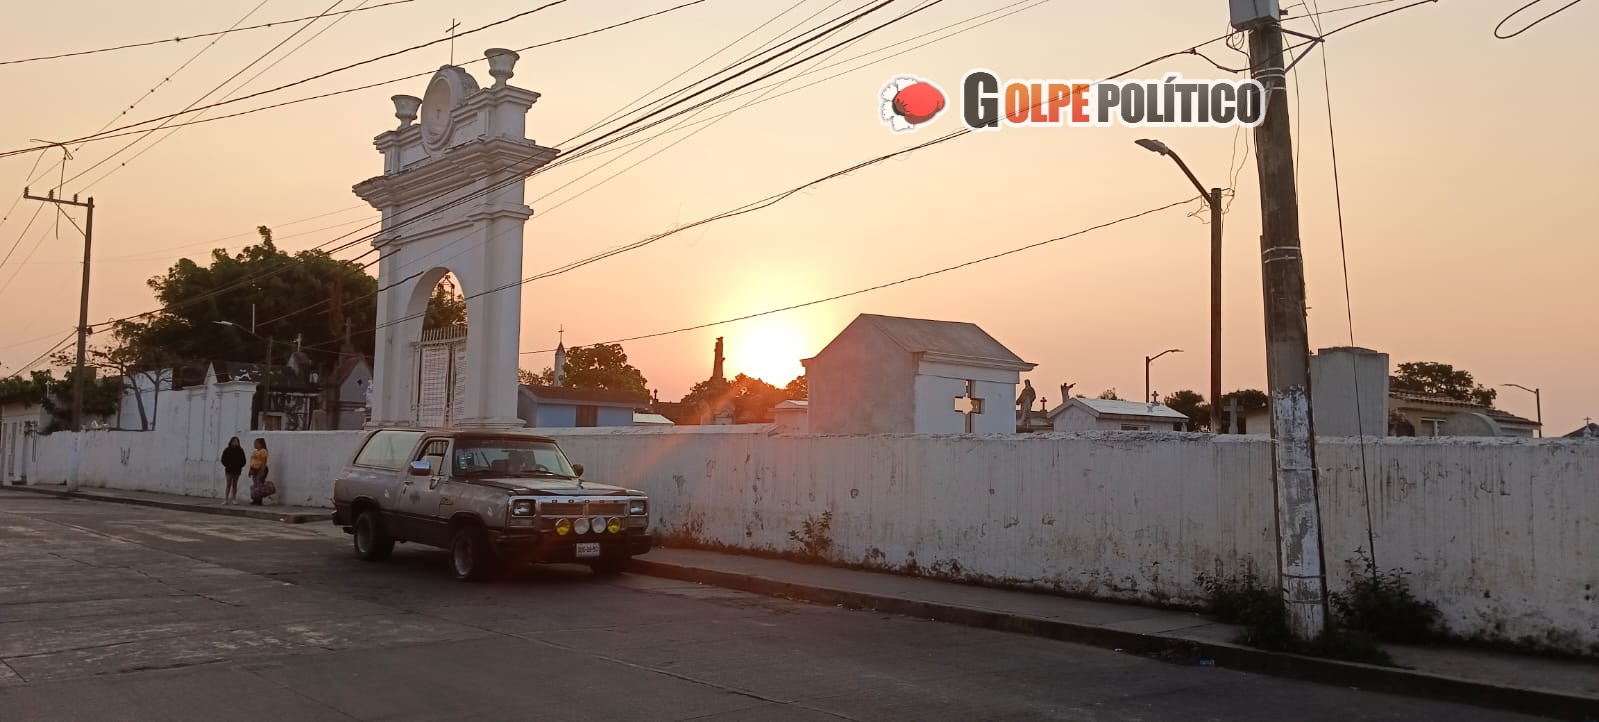 Continúan altas temperaturas y condiciones bochornosas en Veracruz: PC